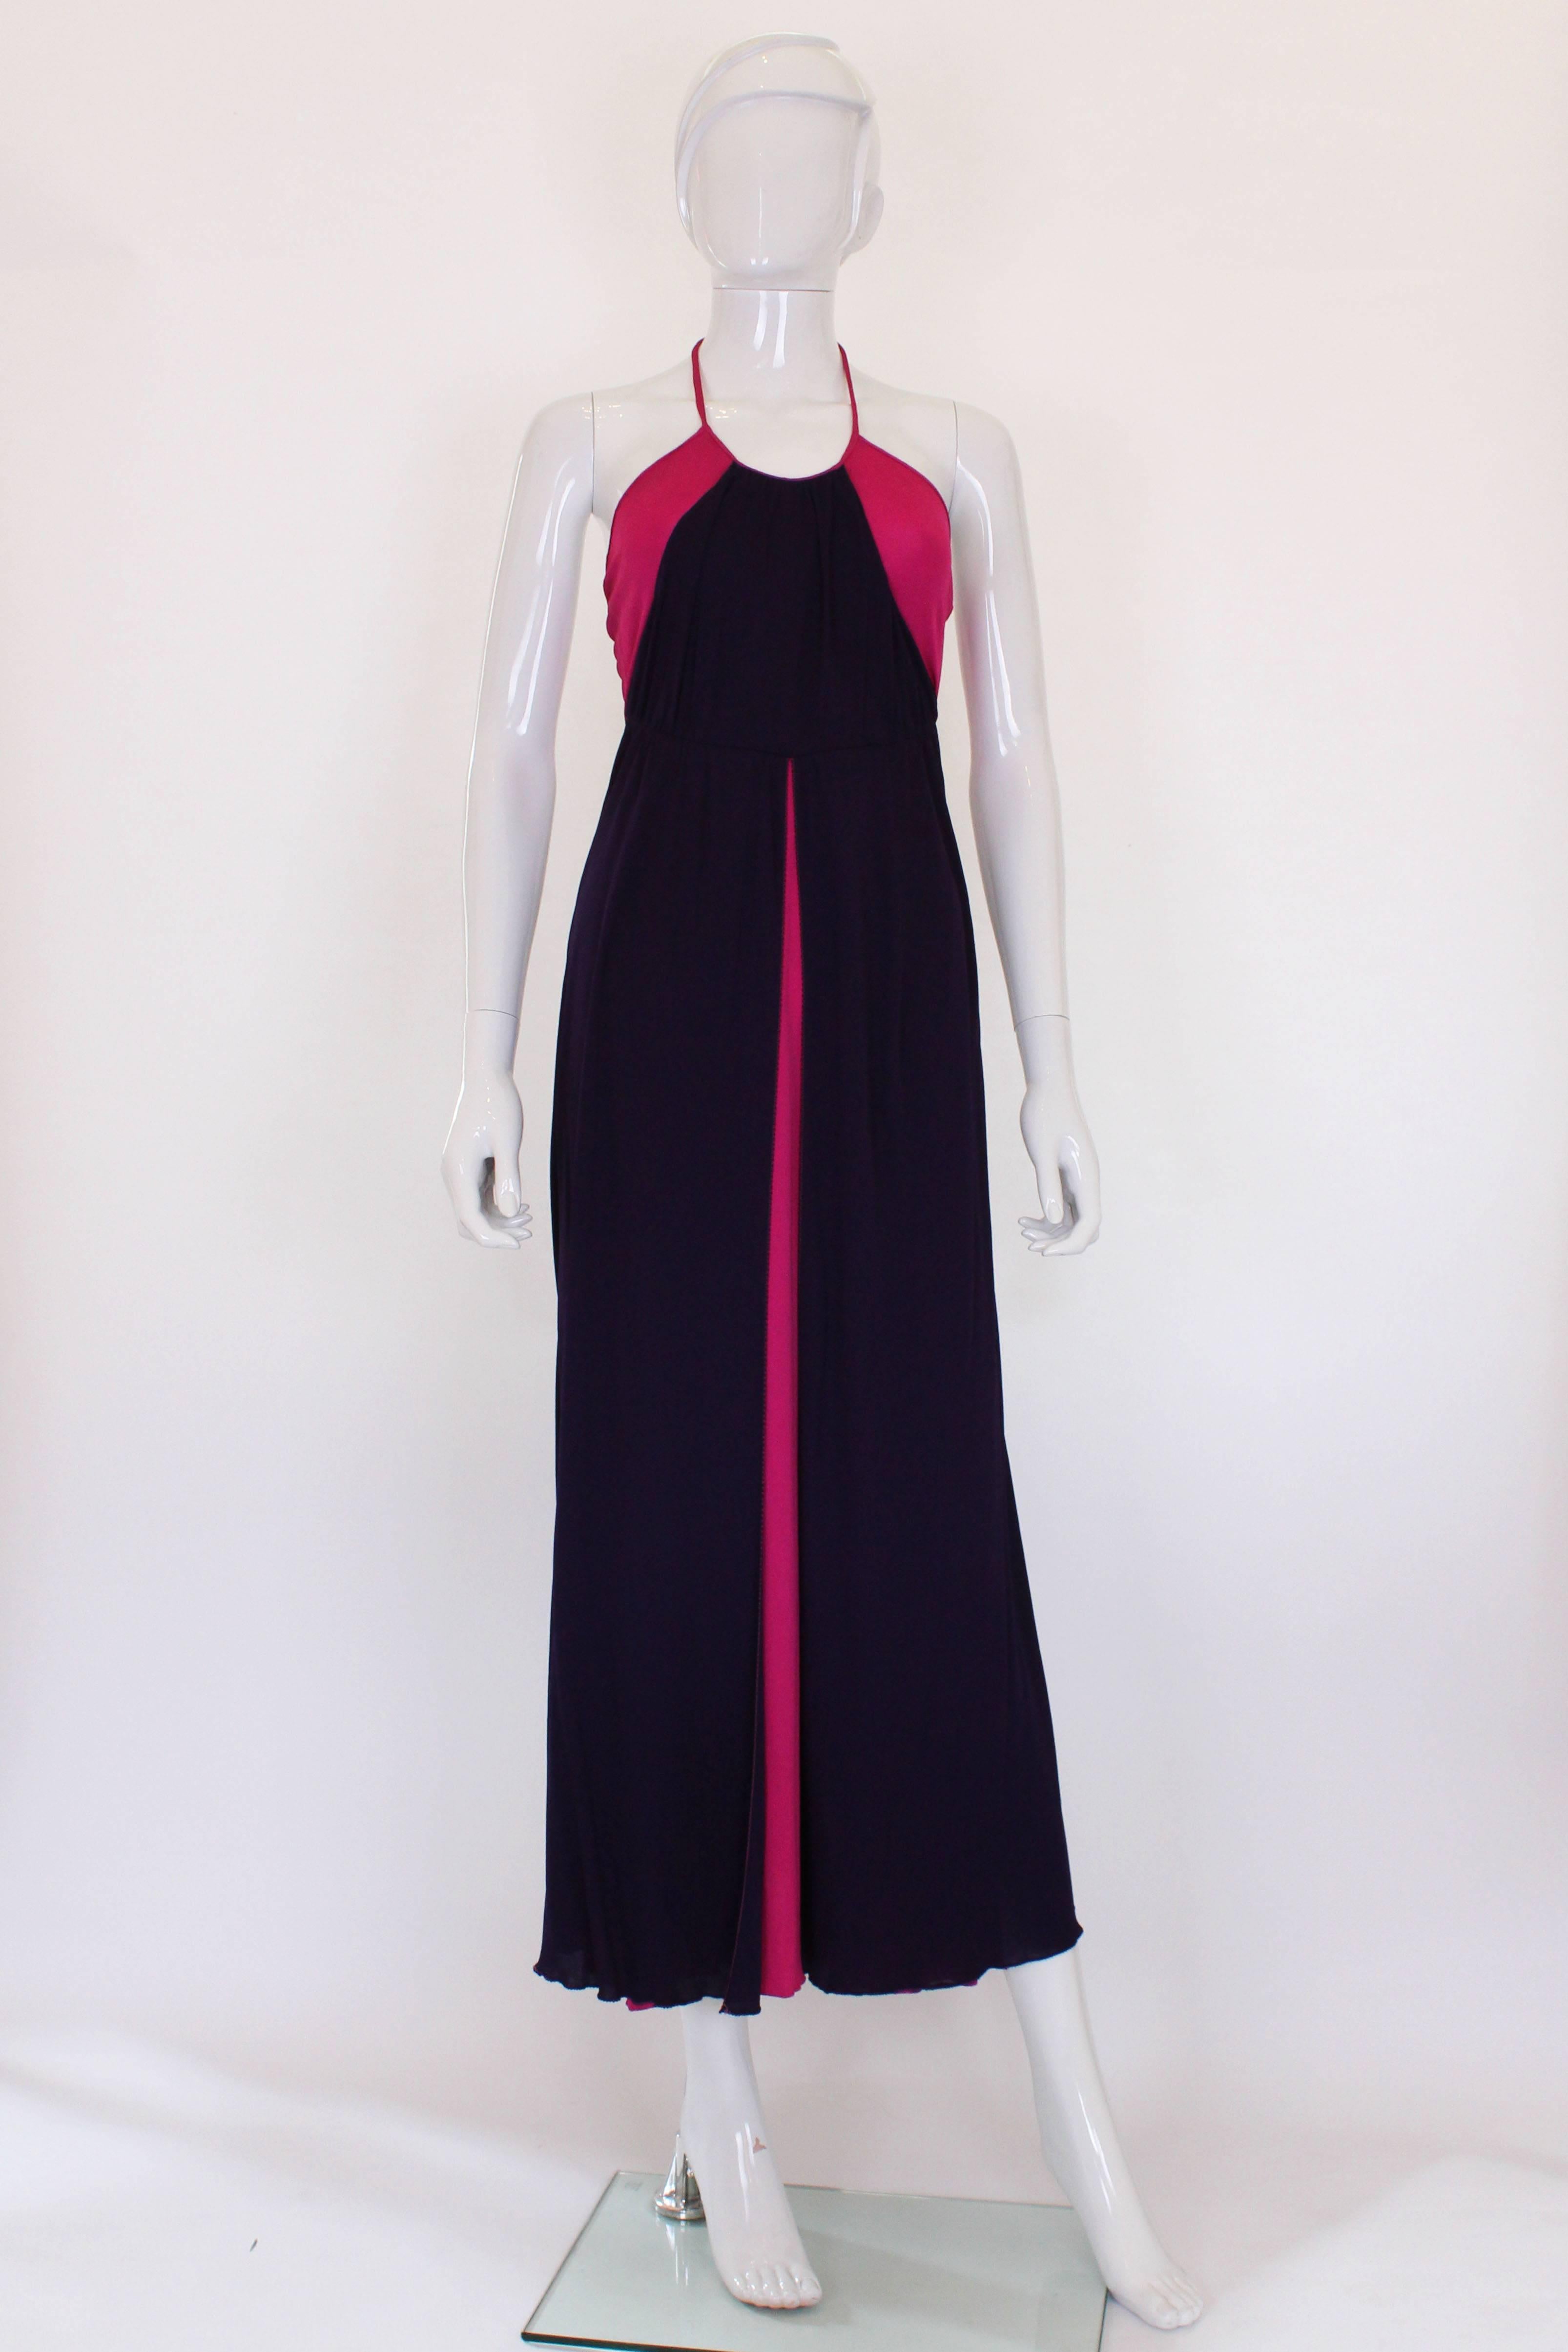 Ein glamouröses Kleid aus den 1970er Jahren von dem britischen Designer Bruce Oldfield.
In einem atemberaubenden Farbspiel aus leuchtendem Pink und tiefem Lila ist dieses Kleid ein echter Hingucker. Es hat einen Neckholder und einen zentralen